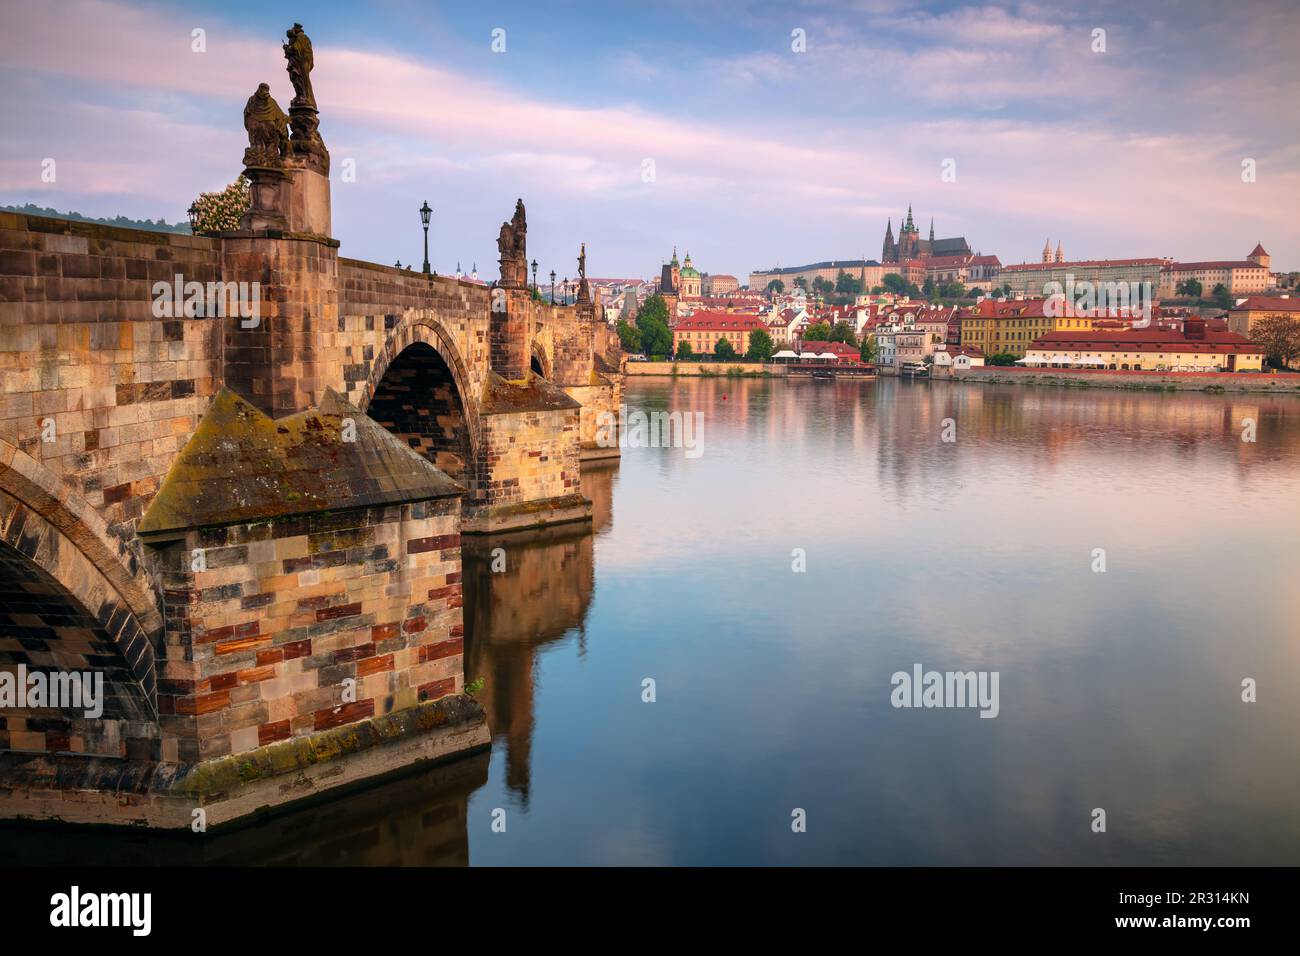 Prag, Tschechische Republik. Stadtbild von Prag, Hauptstadt der Tschechischen Republik, mit der berühmten Karlsbrücke bei Sonnenaufgang. Stockfoto